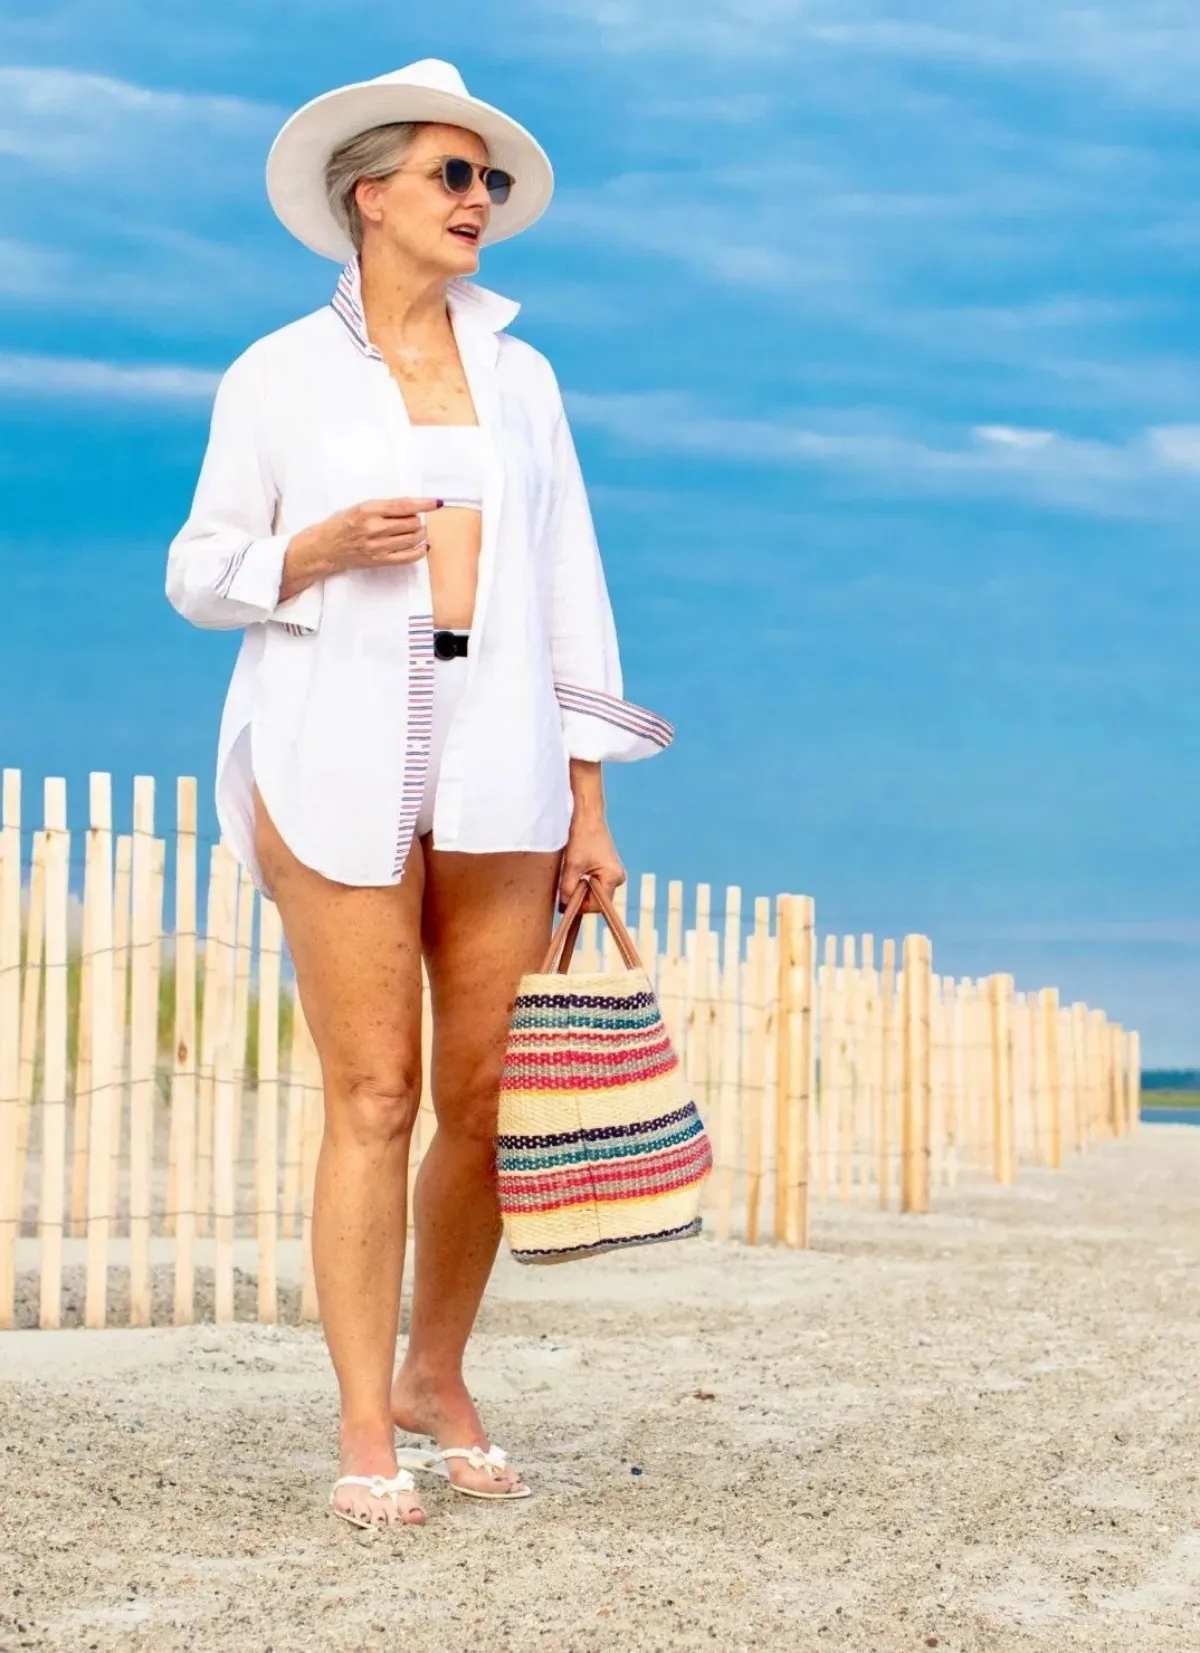 chemisier blanc oversize tenue plage femme apres 60 ans sac colore quelle tenue de plage pour cacher son ventre